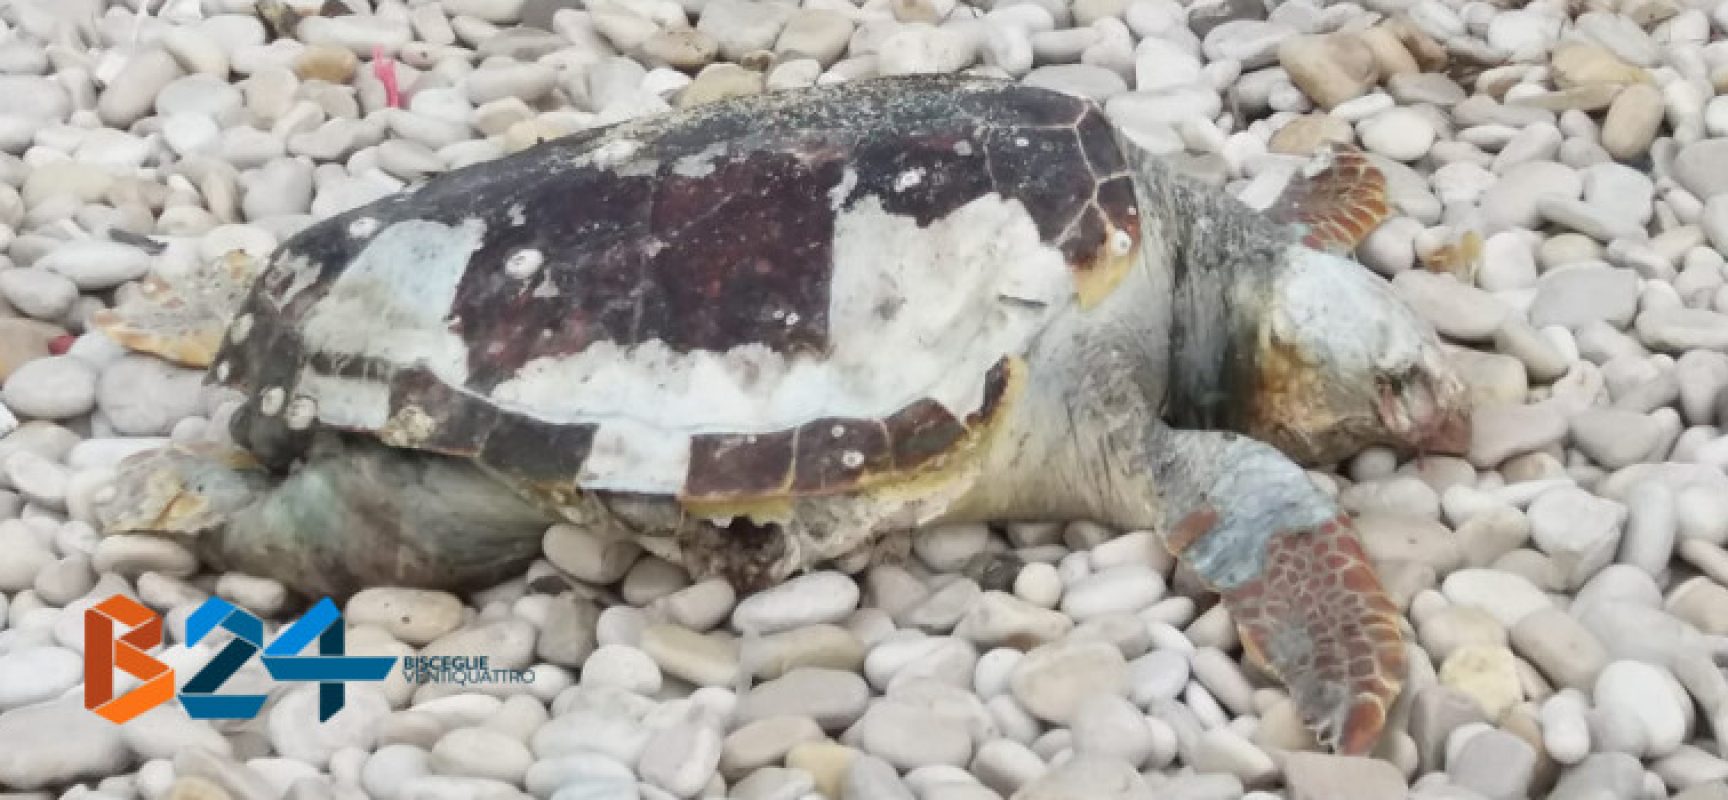 Carcassa di tartaruga marina ritrovata alla seconda spiaggia